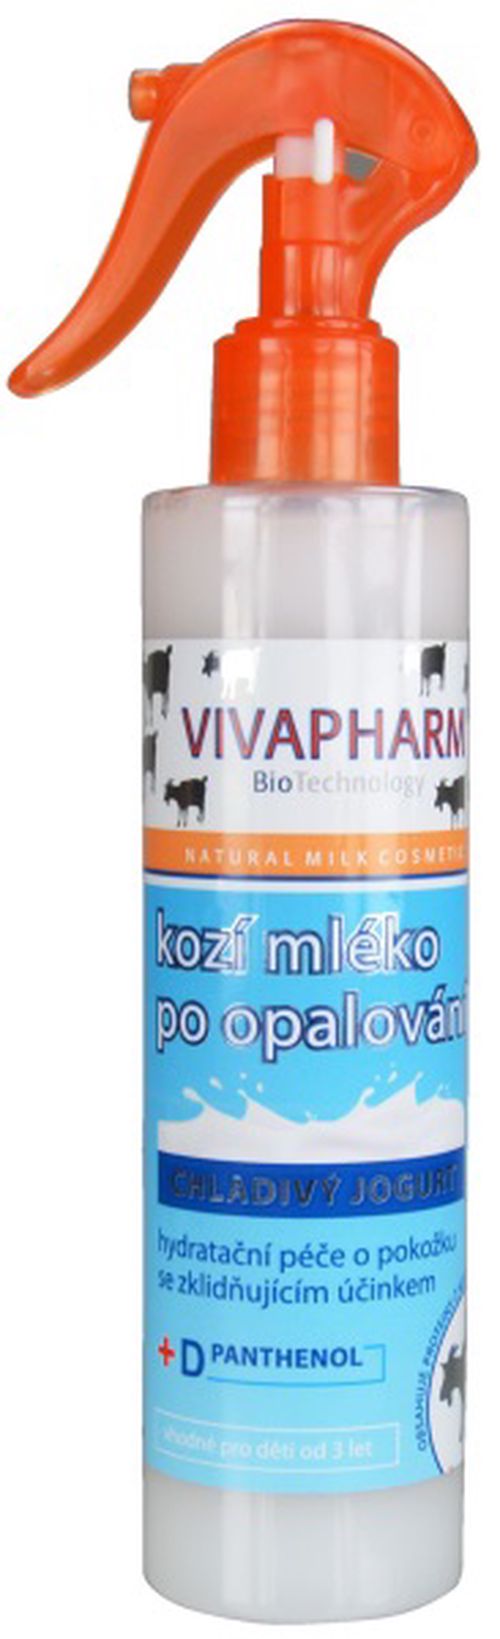 Kozí mléko po opalování s chladivým jogurtem VIVAPHARM 250ml